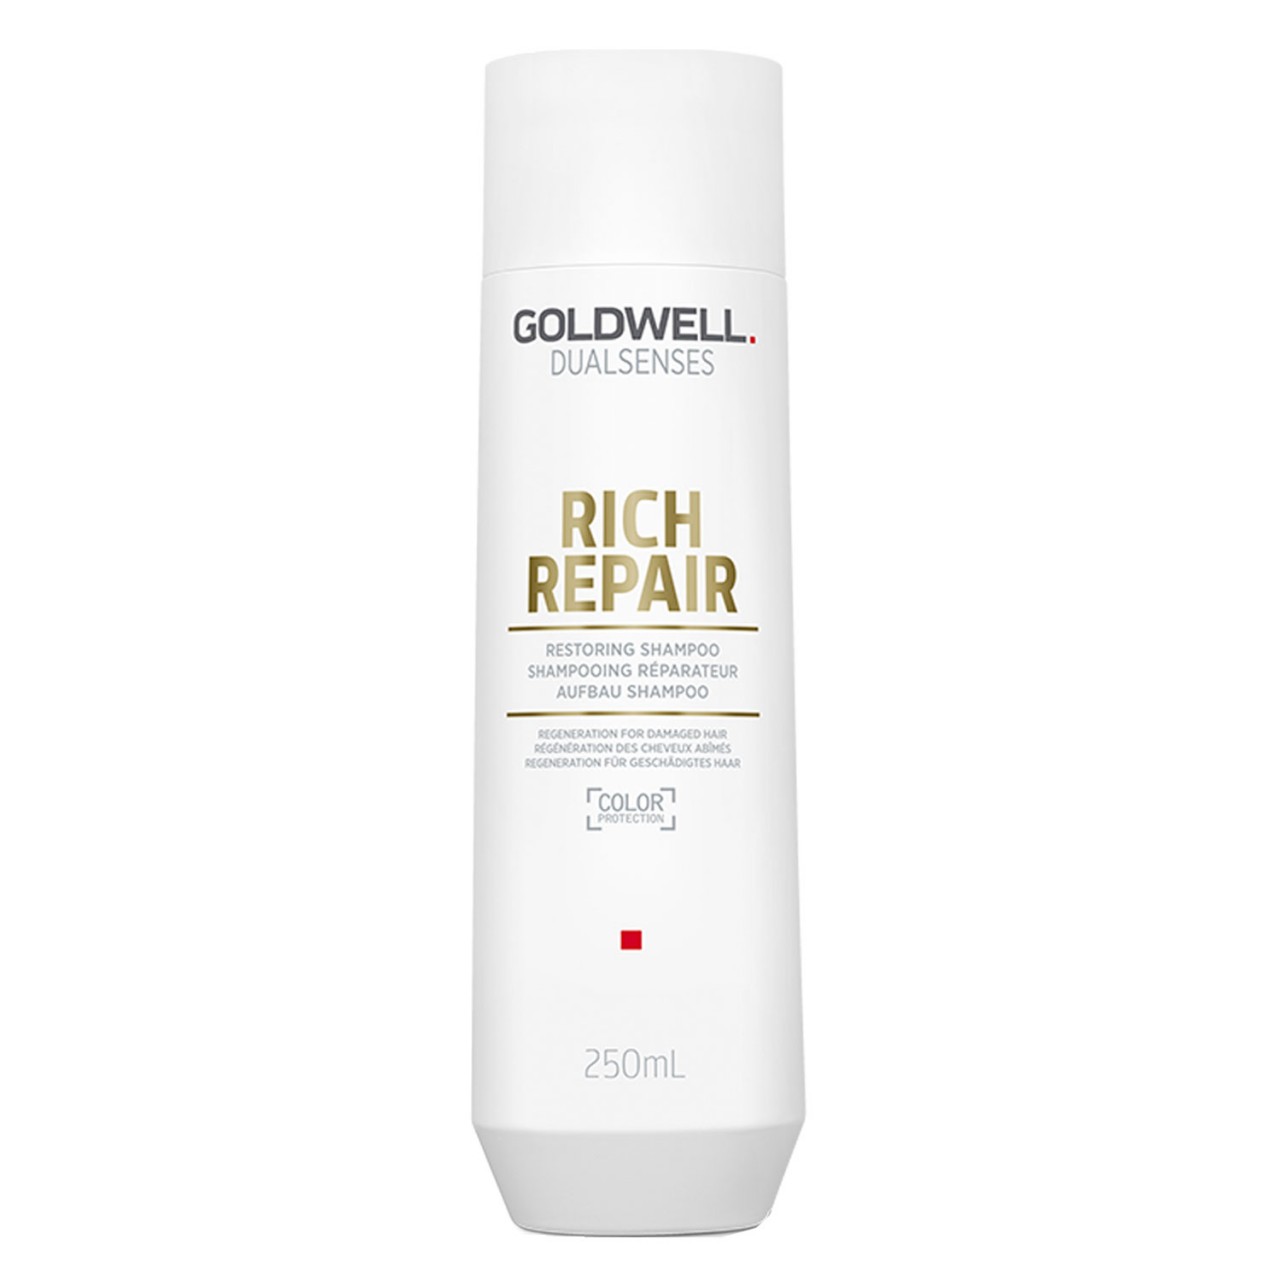 Dualsenses Rich Repair - Restore Shampoo von Goldwell